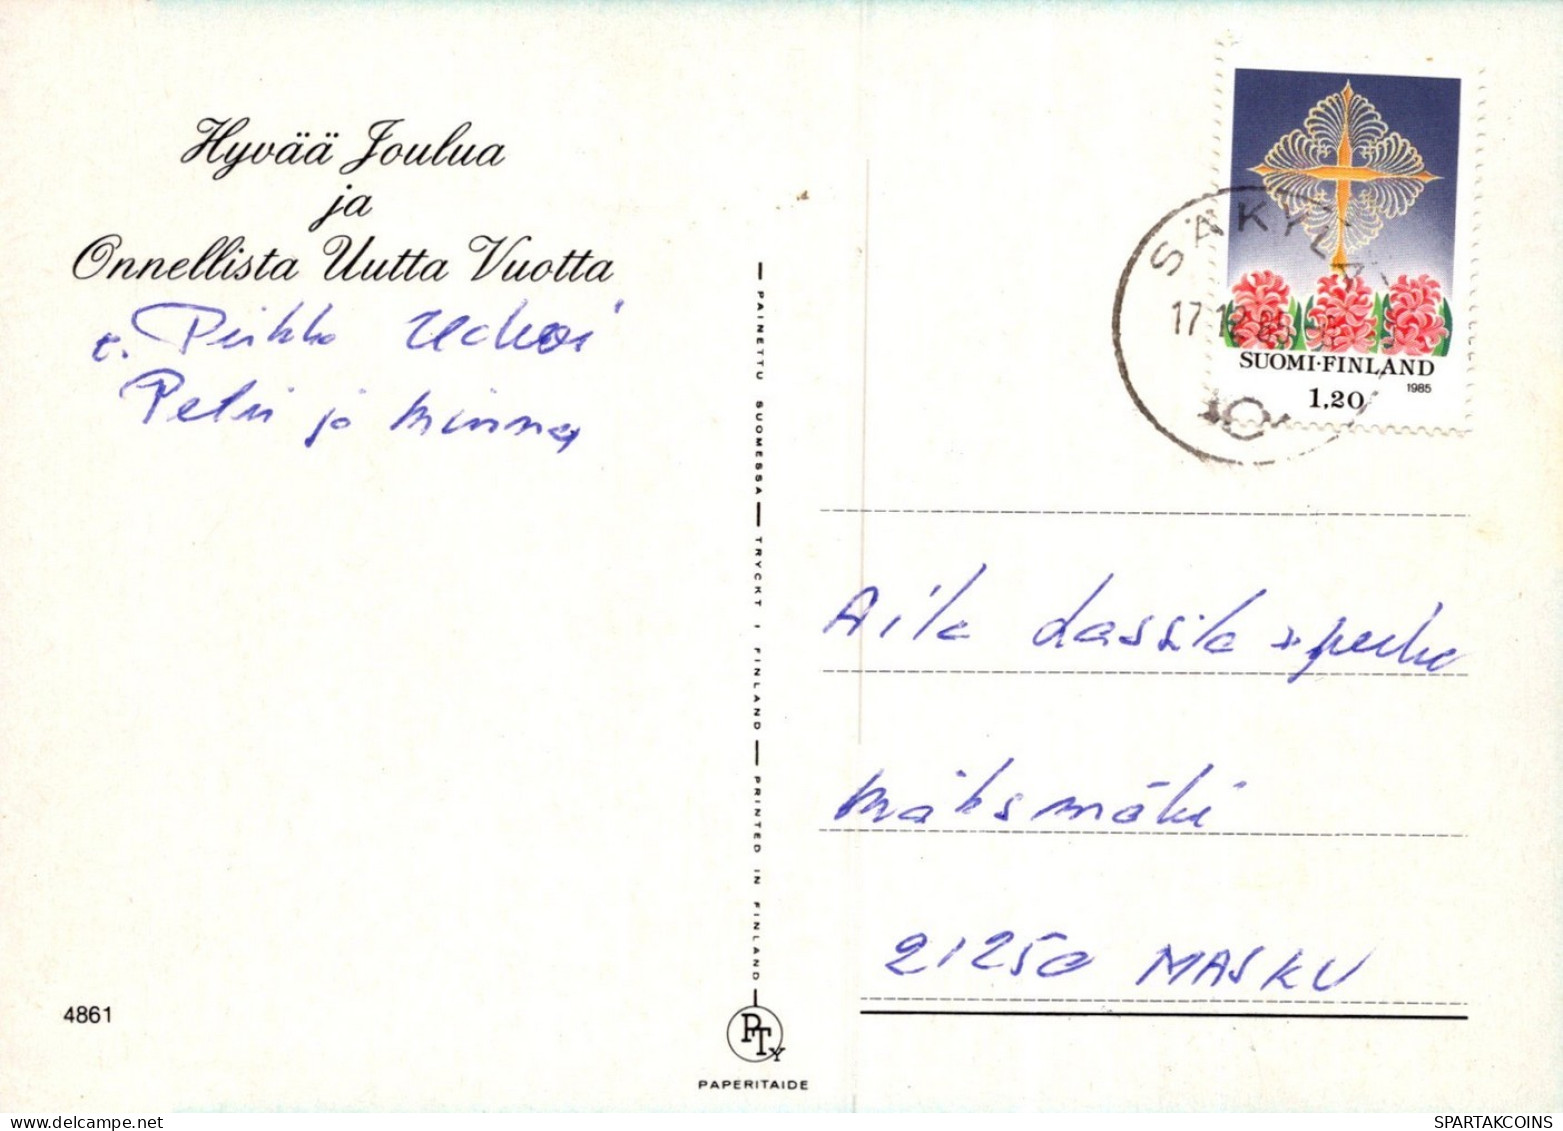 PAPÁ NOEL NAVIDAD Fiesta Vintage Tarjeta Postal CPSM #PAK059.ES - Santa Claus